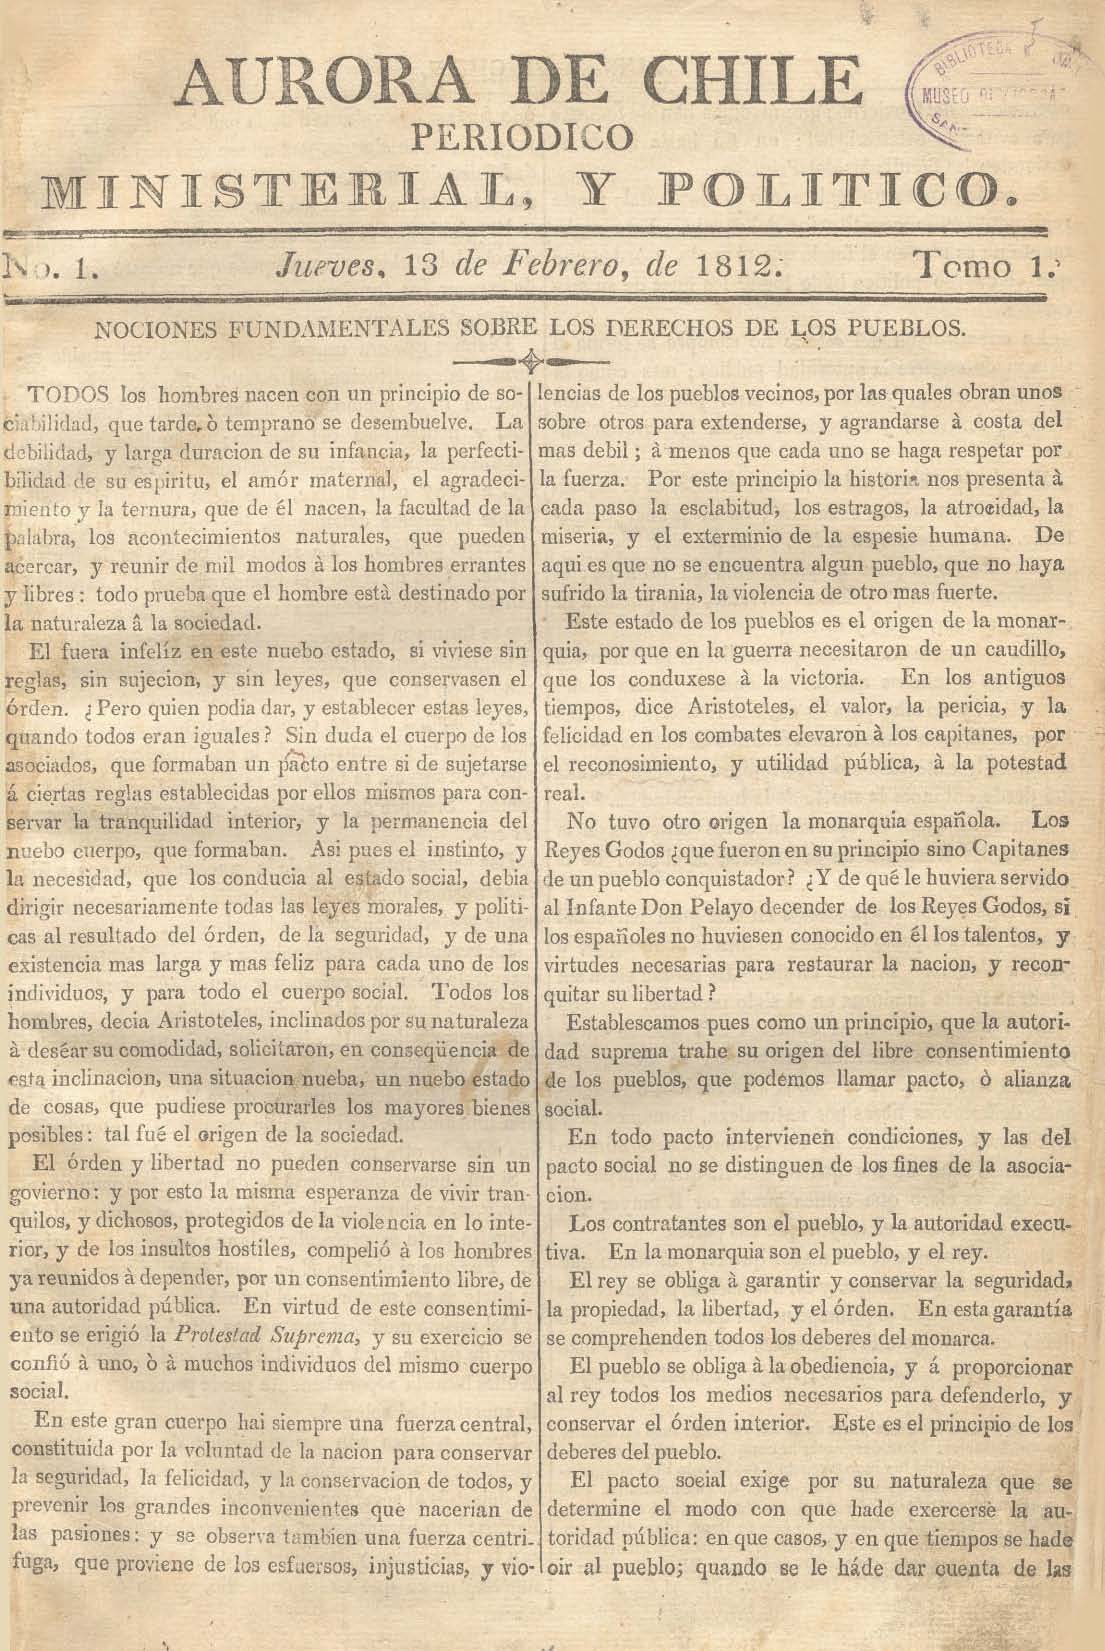 											Ver Núm. 12 (1813): Tomo II. Jueves 1 de Abril
										